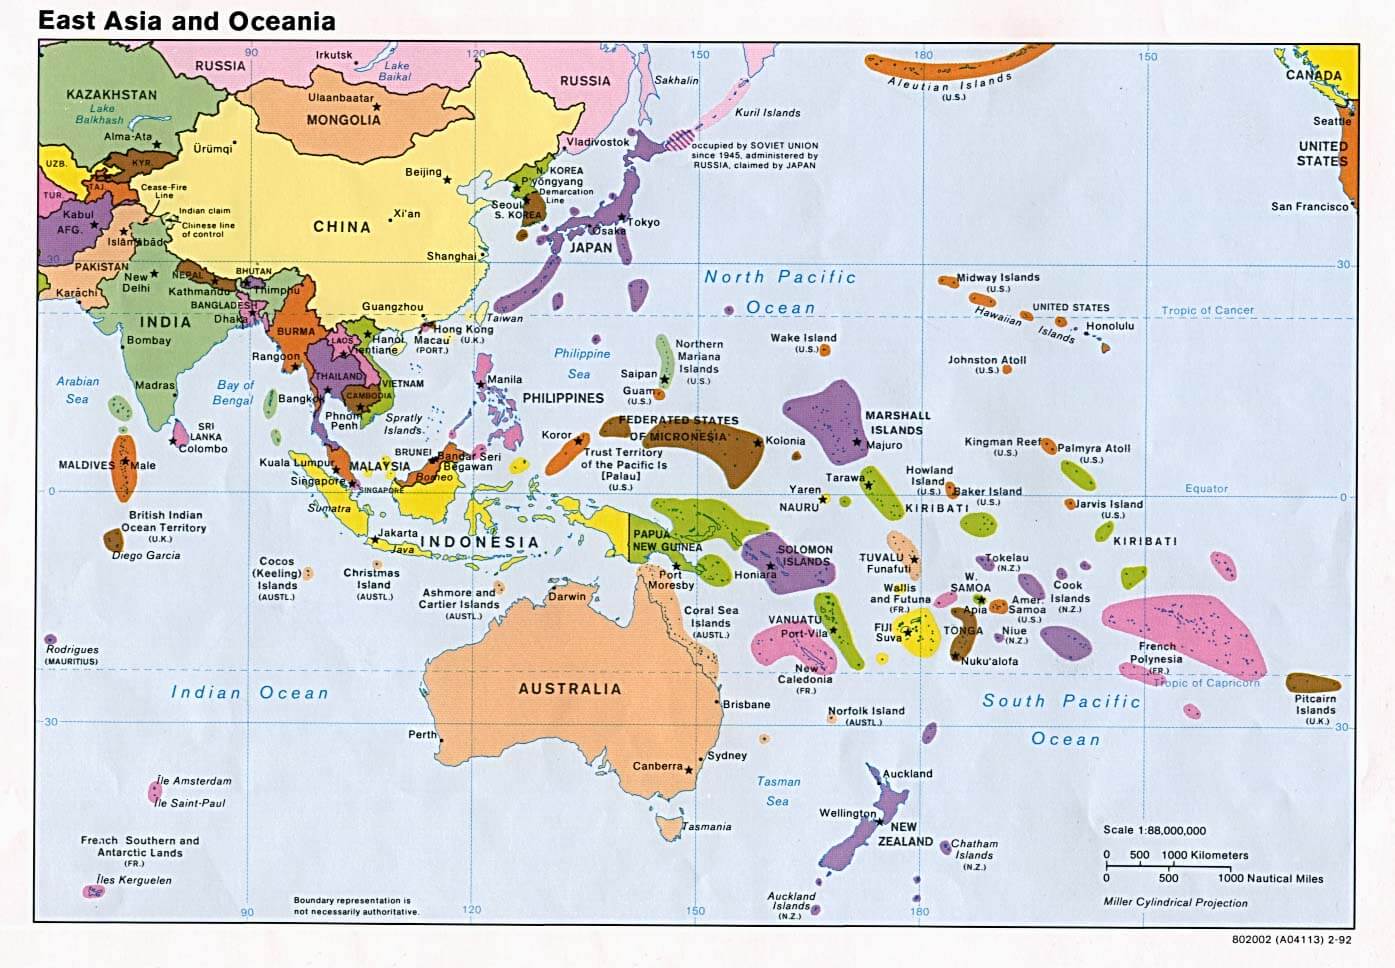 osten asien ozeania politisch 1992